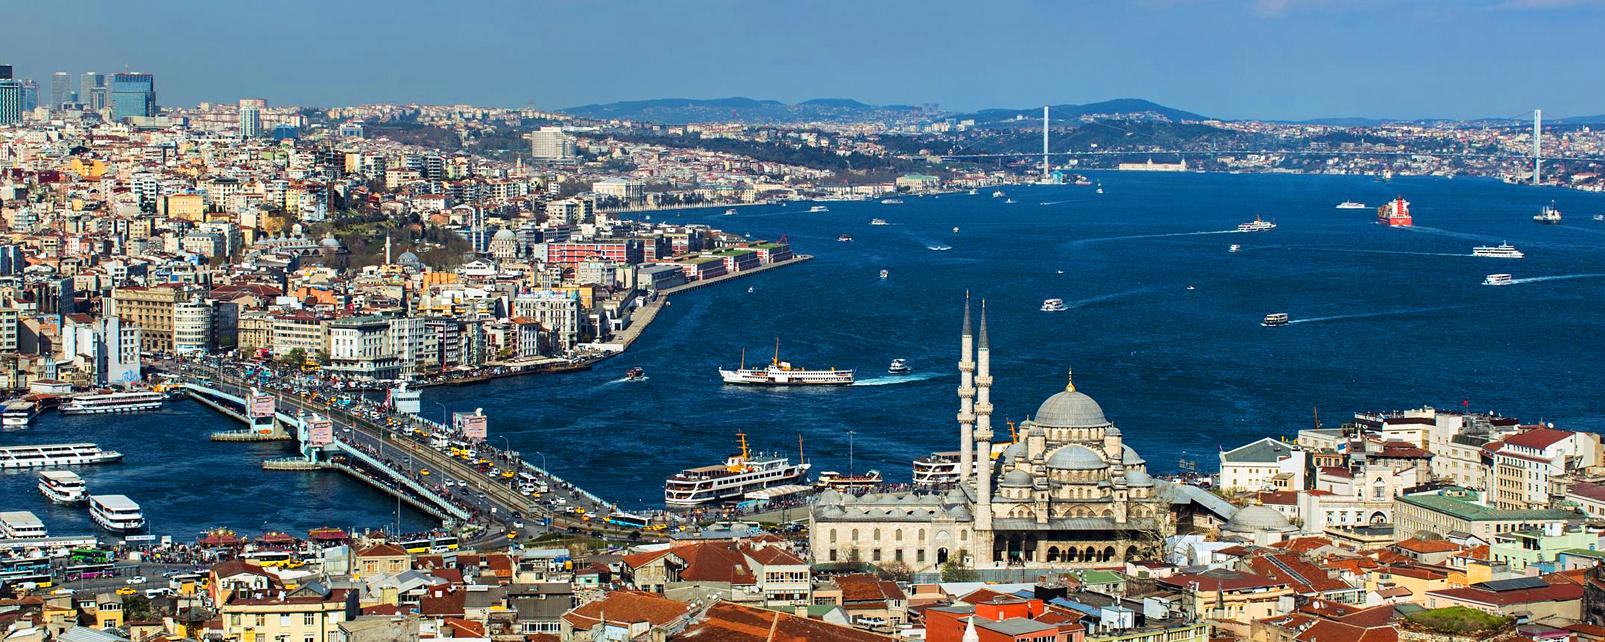 В рейтинге самых популярных городов мира по версии Instagram Стамбул занял 9-е место